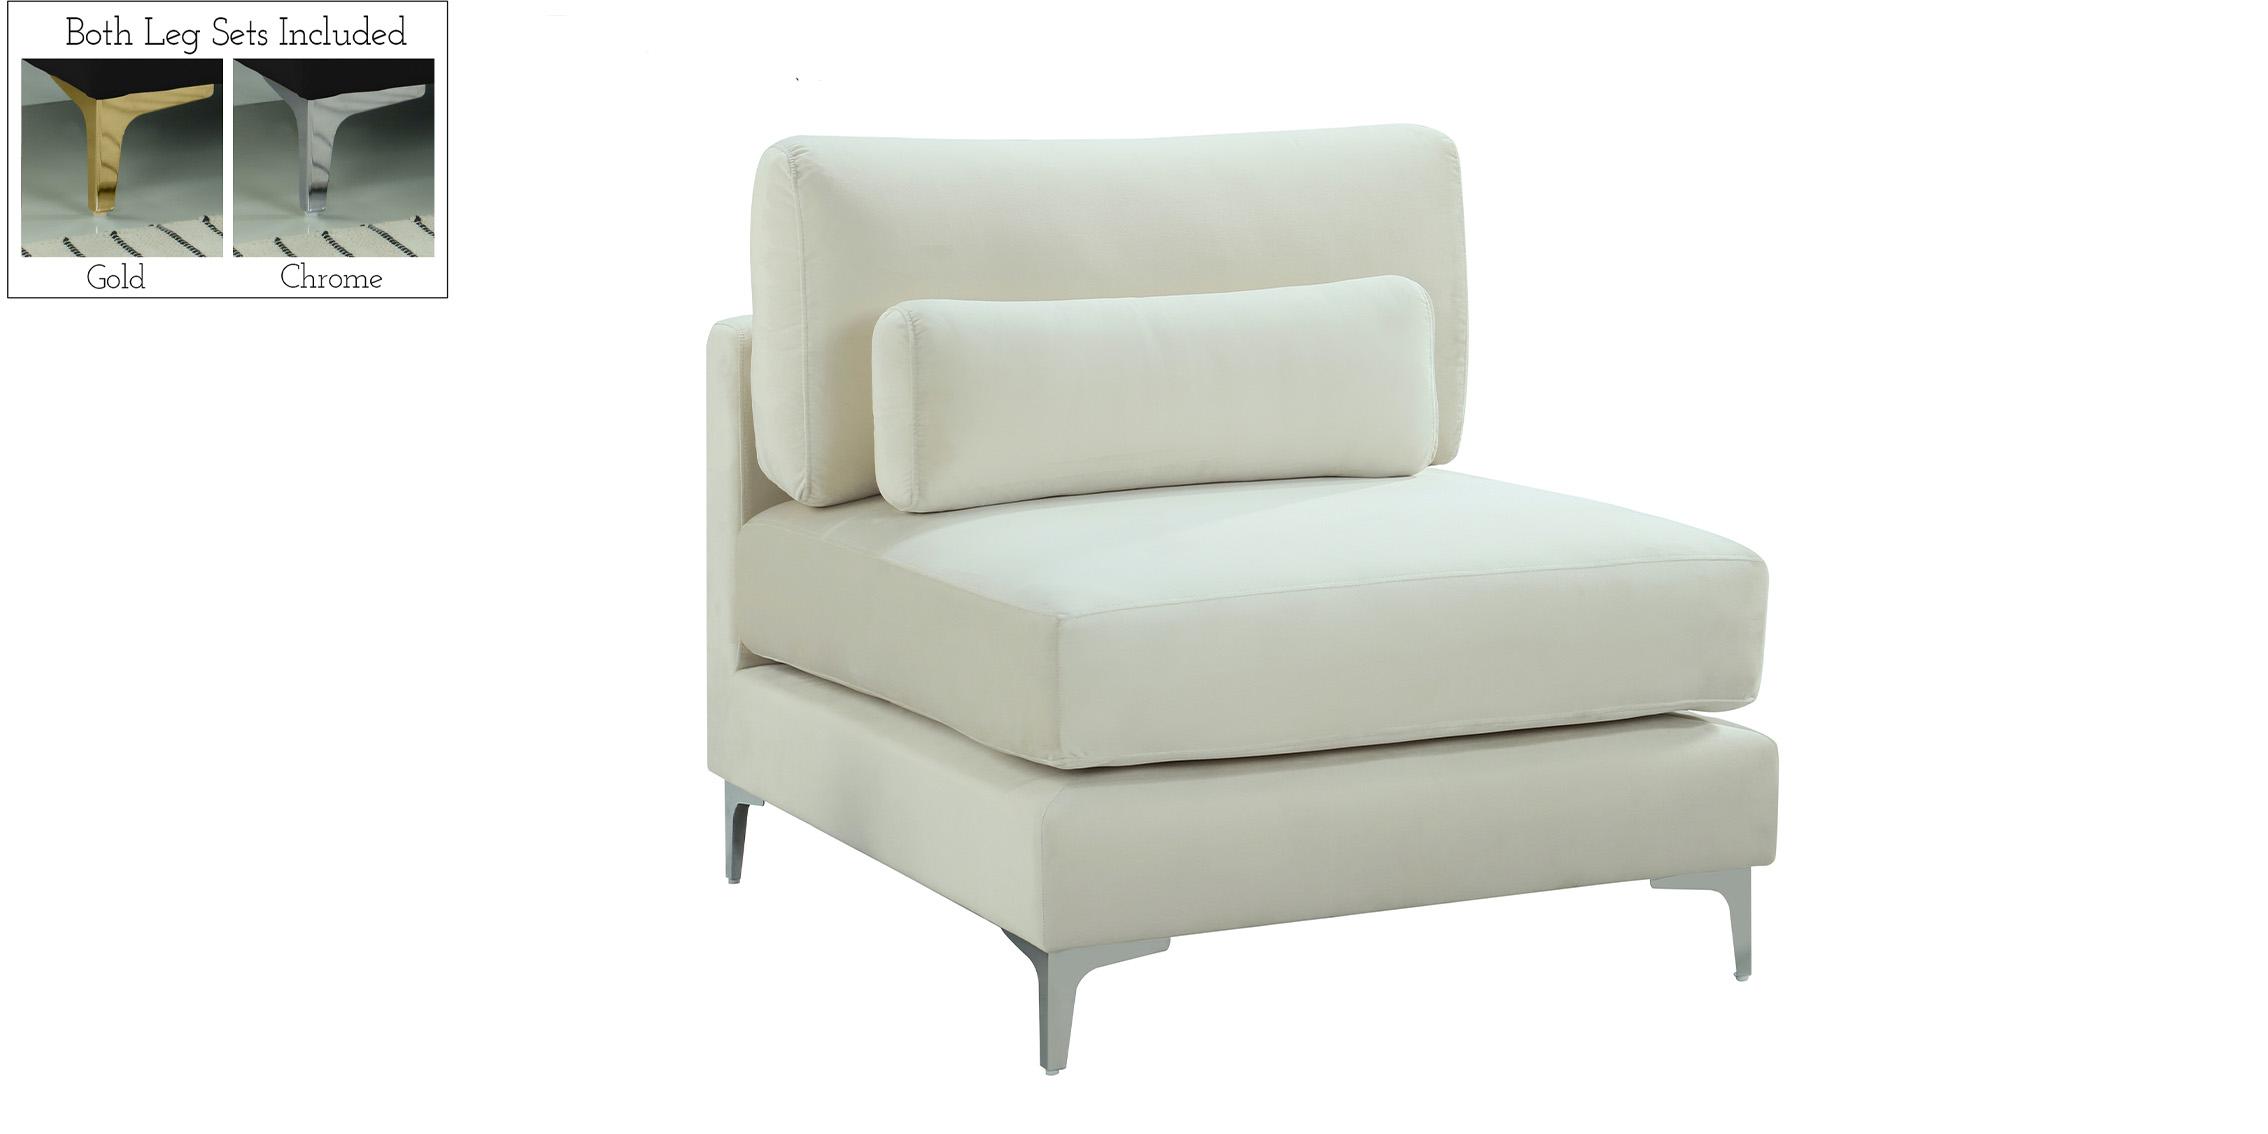 Contemporary, Modern Armless Chair JULIA 605Cream-Armless 605Cream-Armless in Cream Velvet